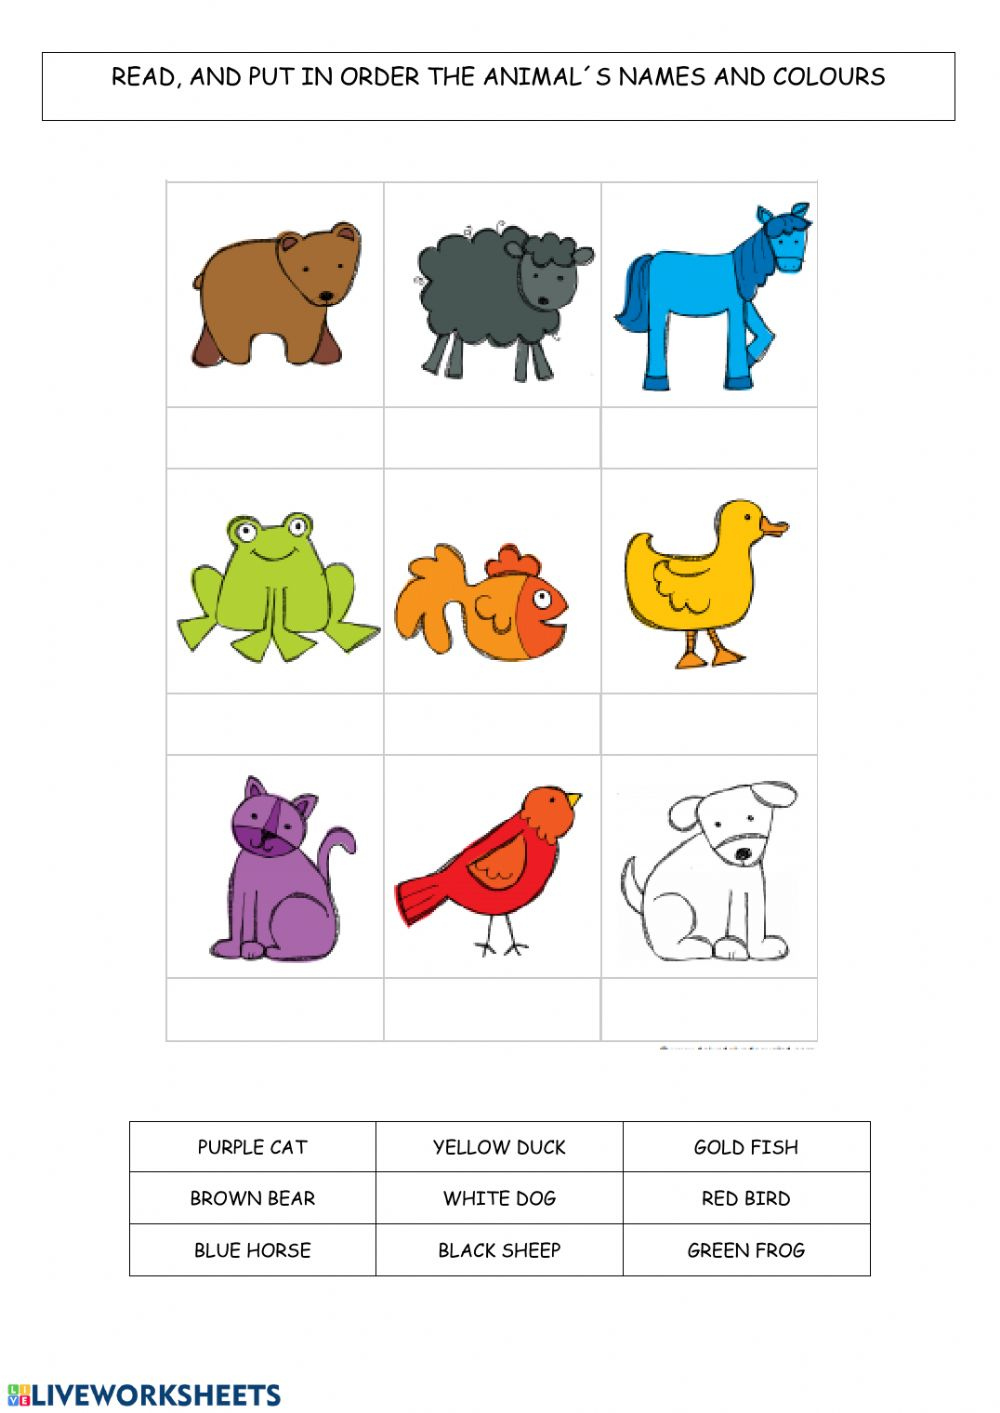 brown-bear-brown-bear-printable-worksheets-lyana-worksheets